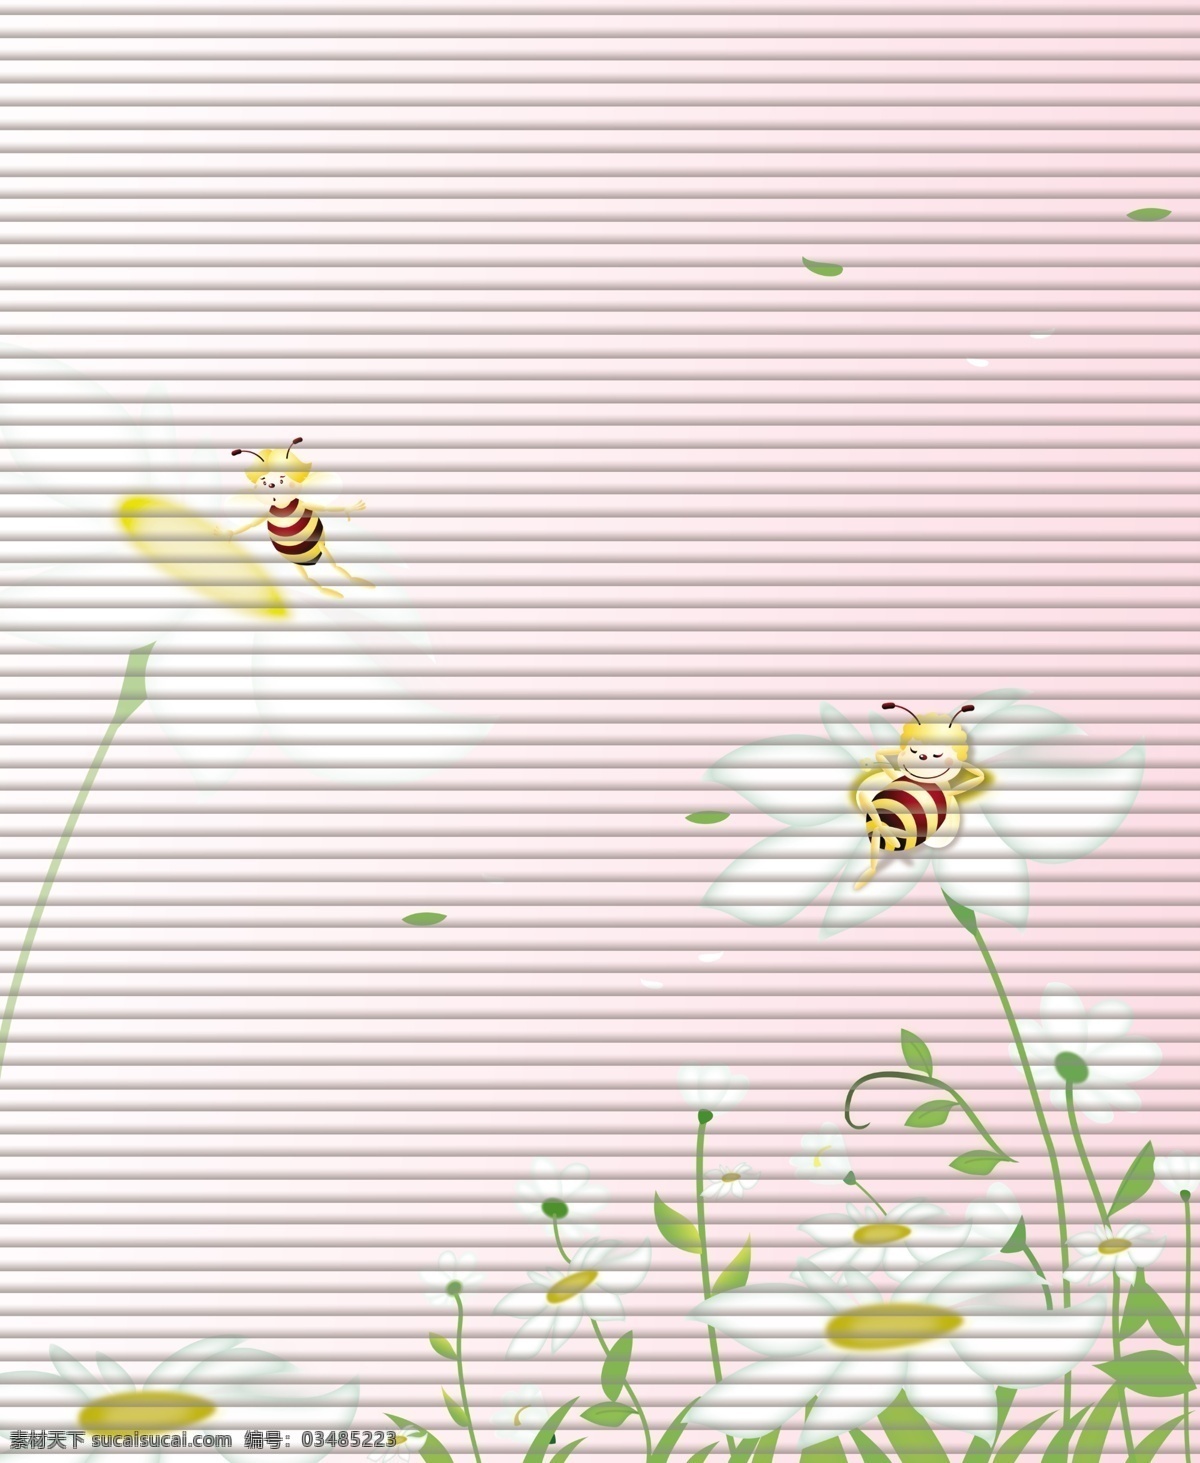 可爱 蜜蜂 粉色 广告设计模板 花 花瓣 卡通 绿叶 移门 可爱蜜蜂 小白菊 两只蜜蜂 移门图案 源文件 家居装饰素材